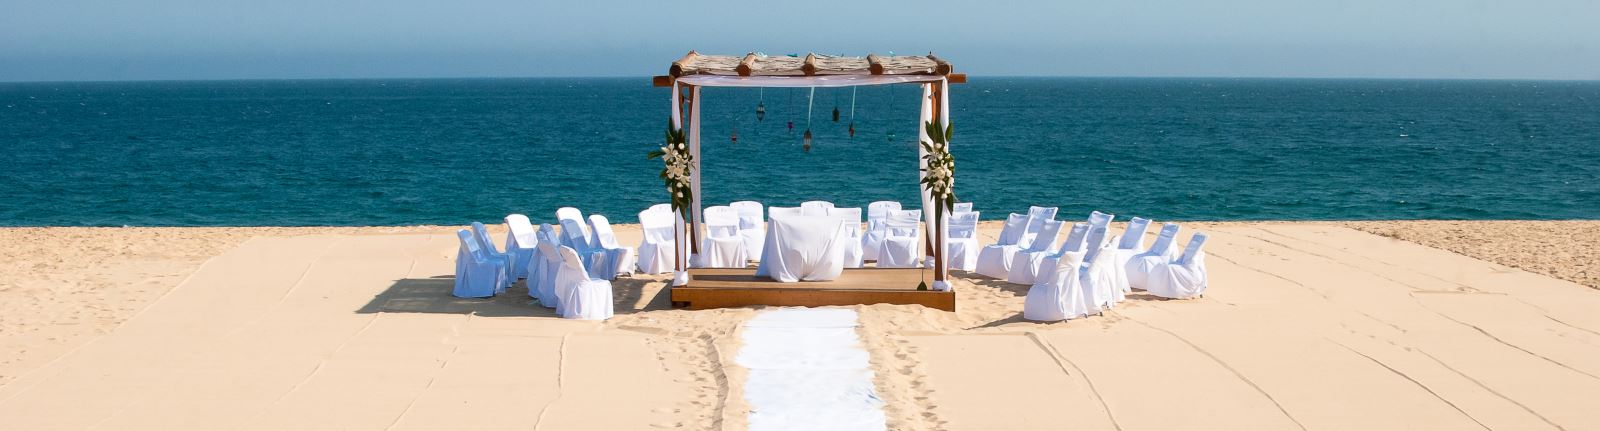 Los Cabos Weddings mexico beach ocean